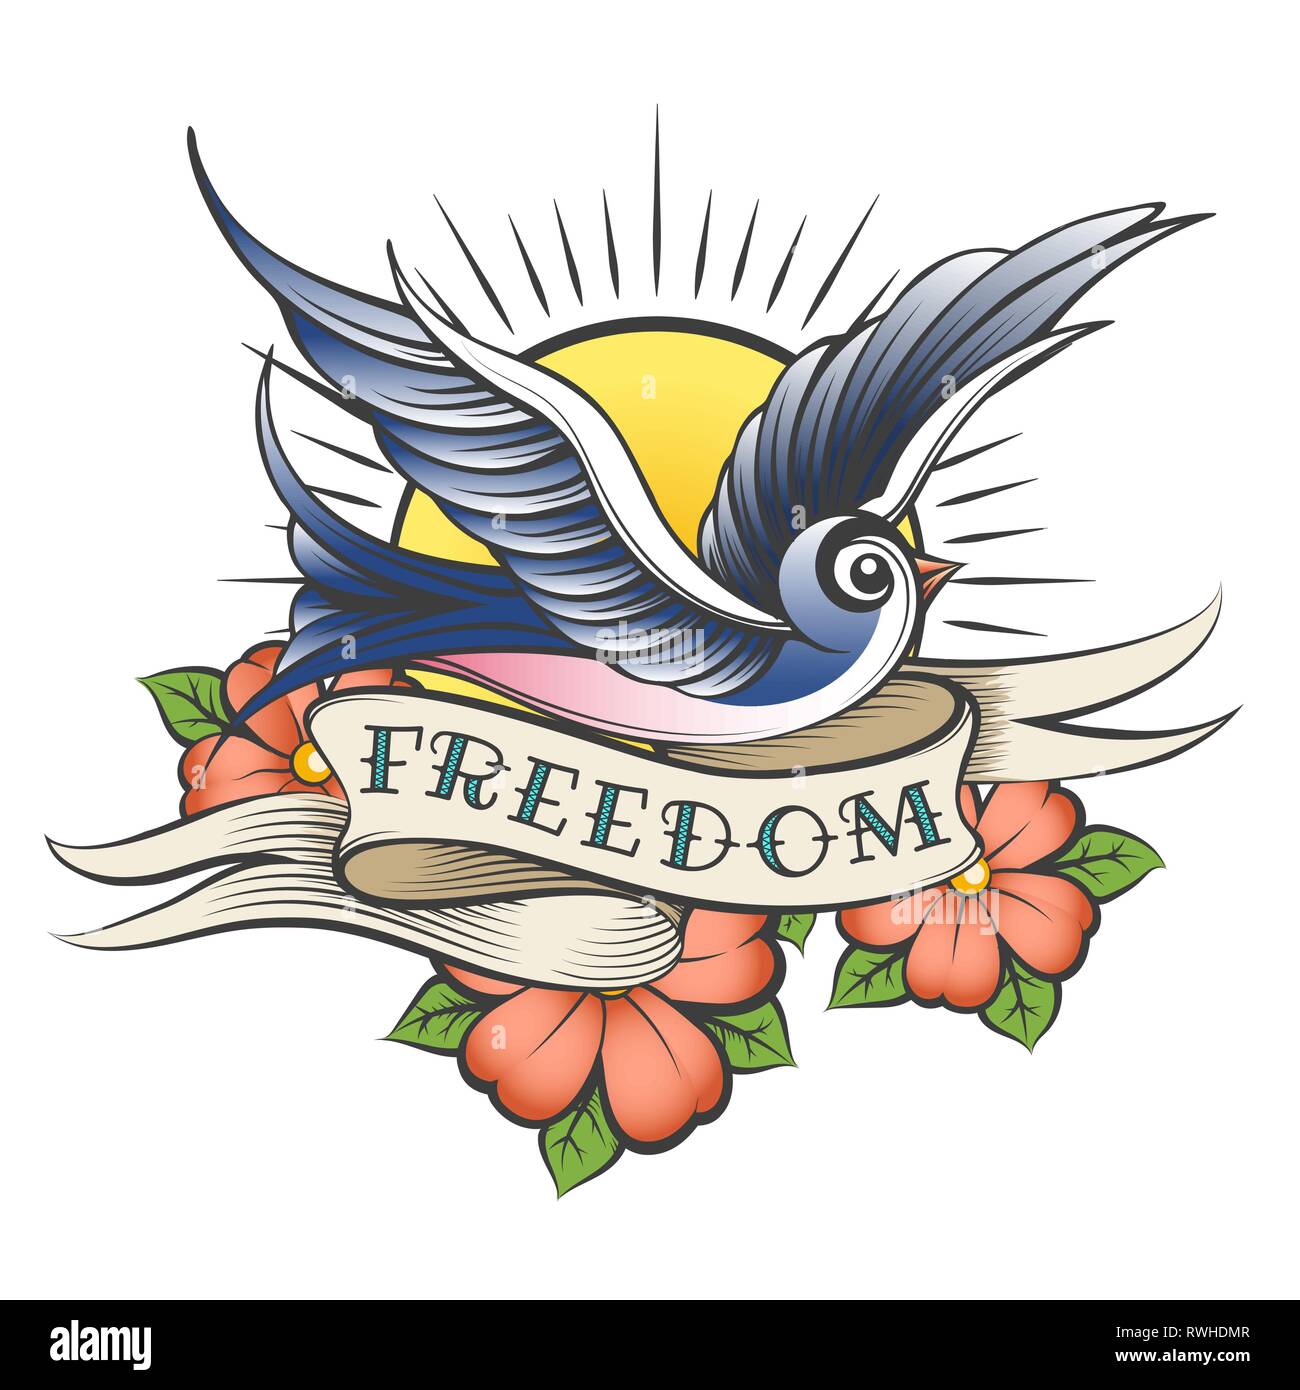 Fliegender Vogel gegen die Sonne, Blumen und Band mit Wortlaut Freiheit in Tattoo Stil gezeichnet. Vector Illustration. Stock Vektor